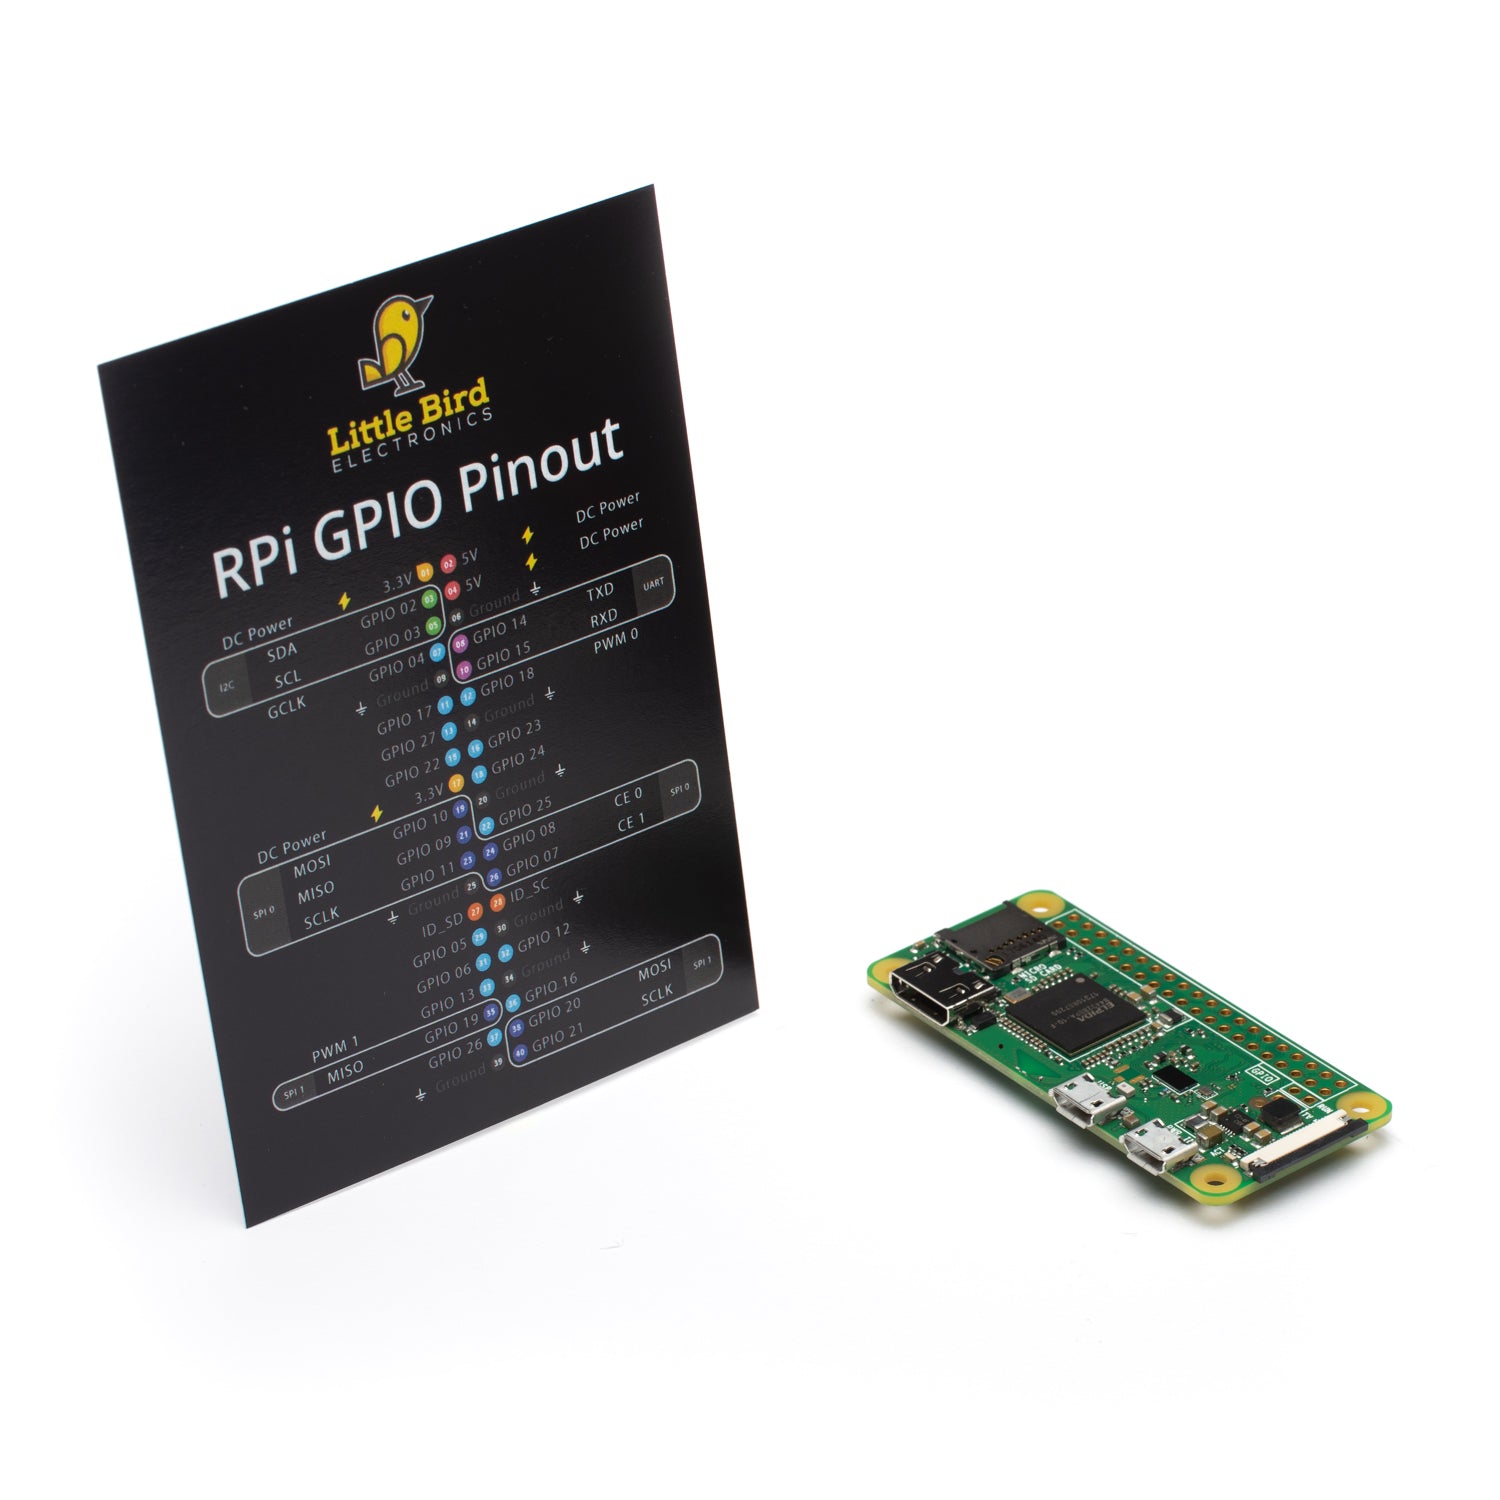 Raspberry Pi Zero W with GPIO Reference Card